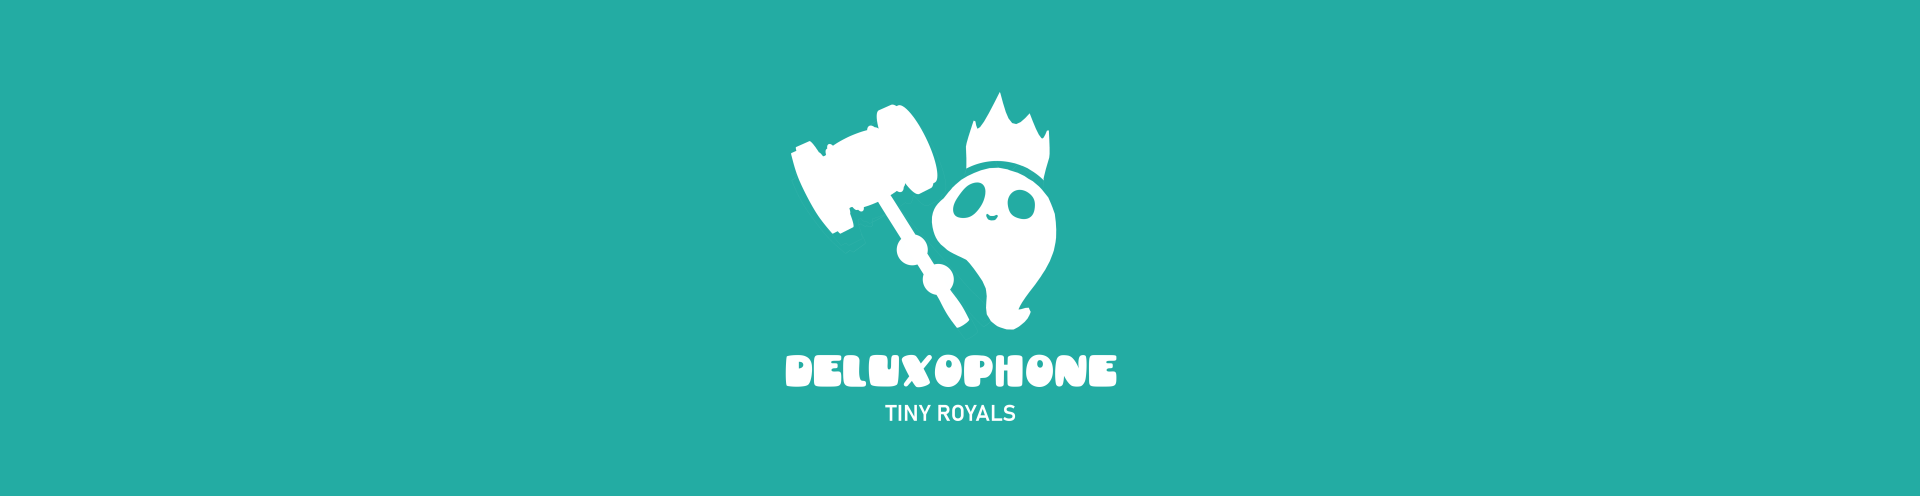 Deluxophone - Little Royals